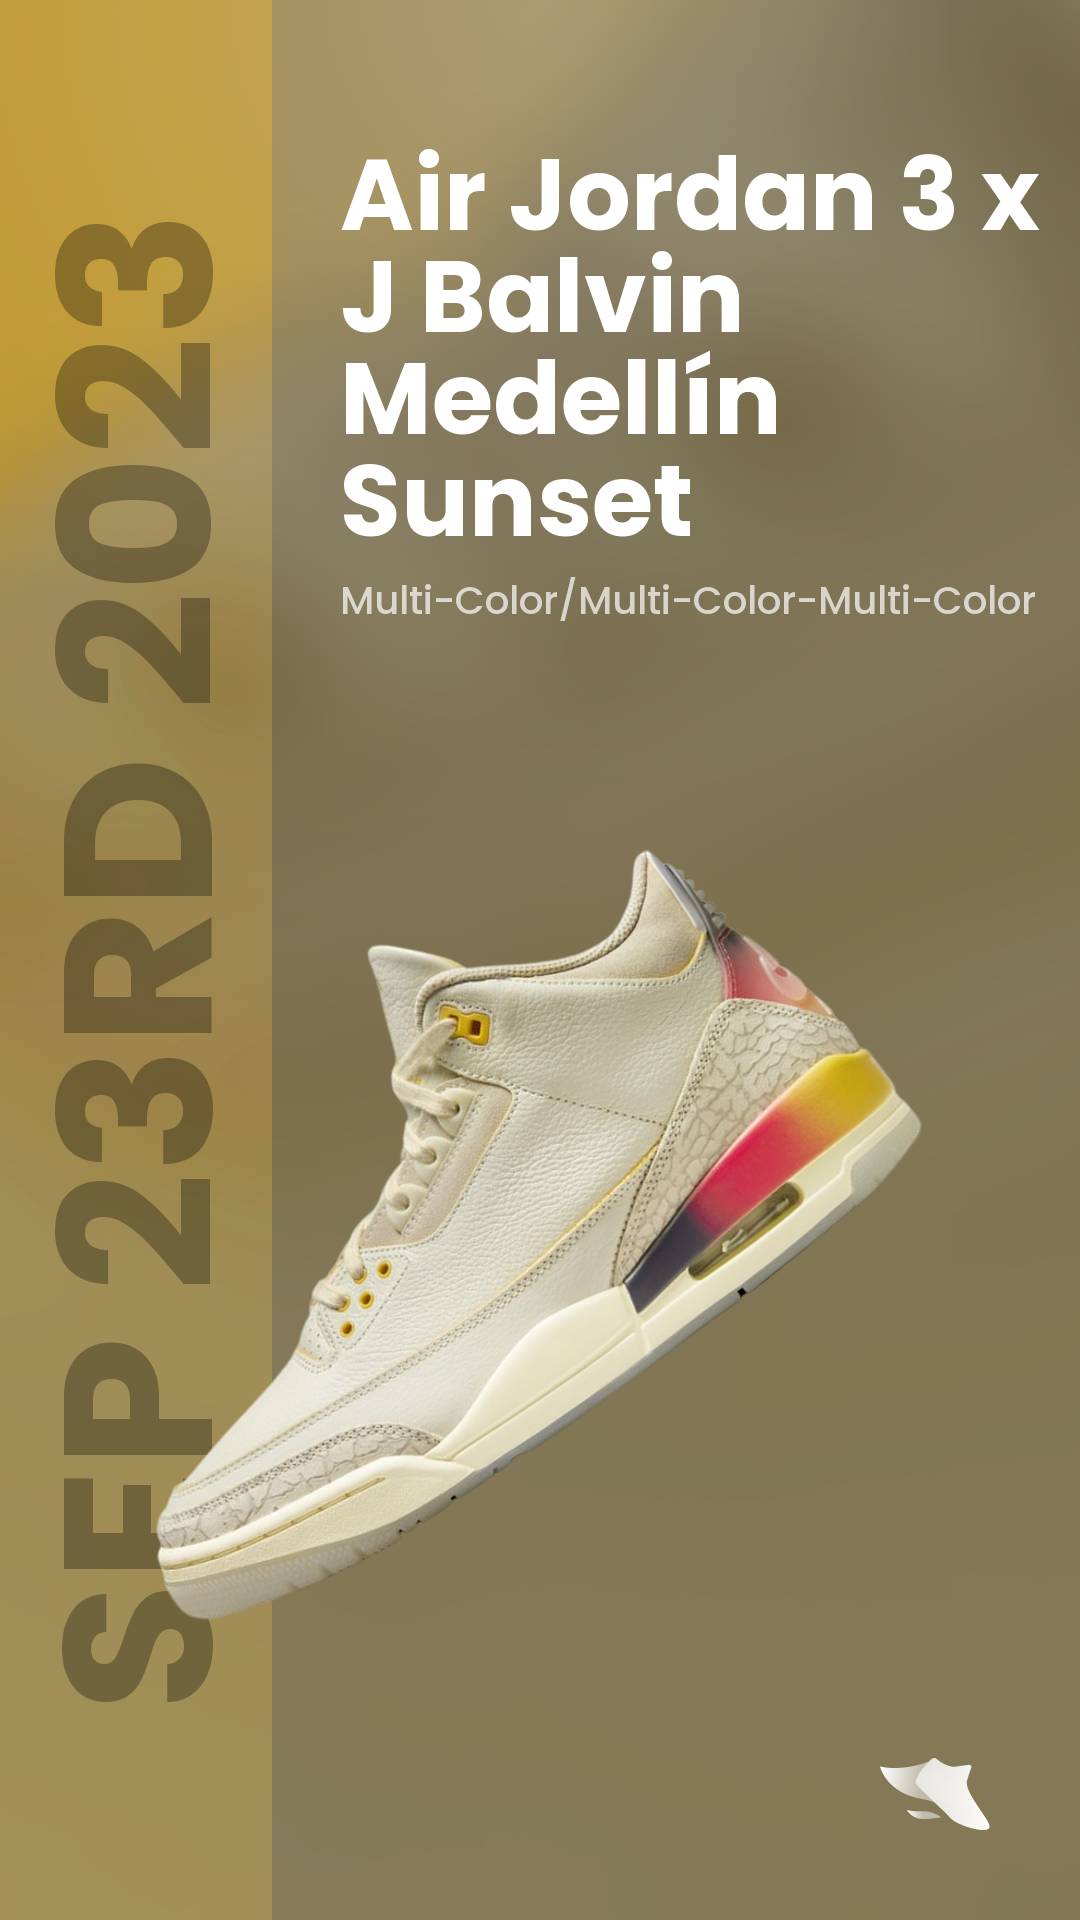 Where to Buy the J Balvin x Air Jordan 3 'Medellín Sunset' - Sneaker Freaker